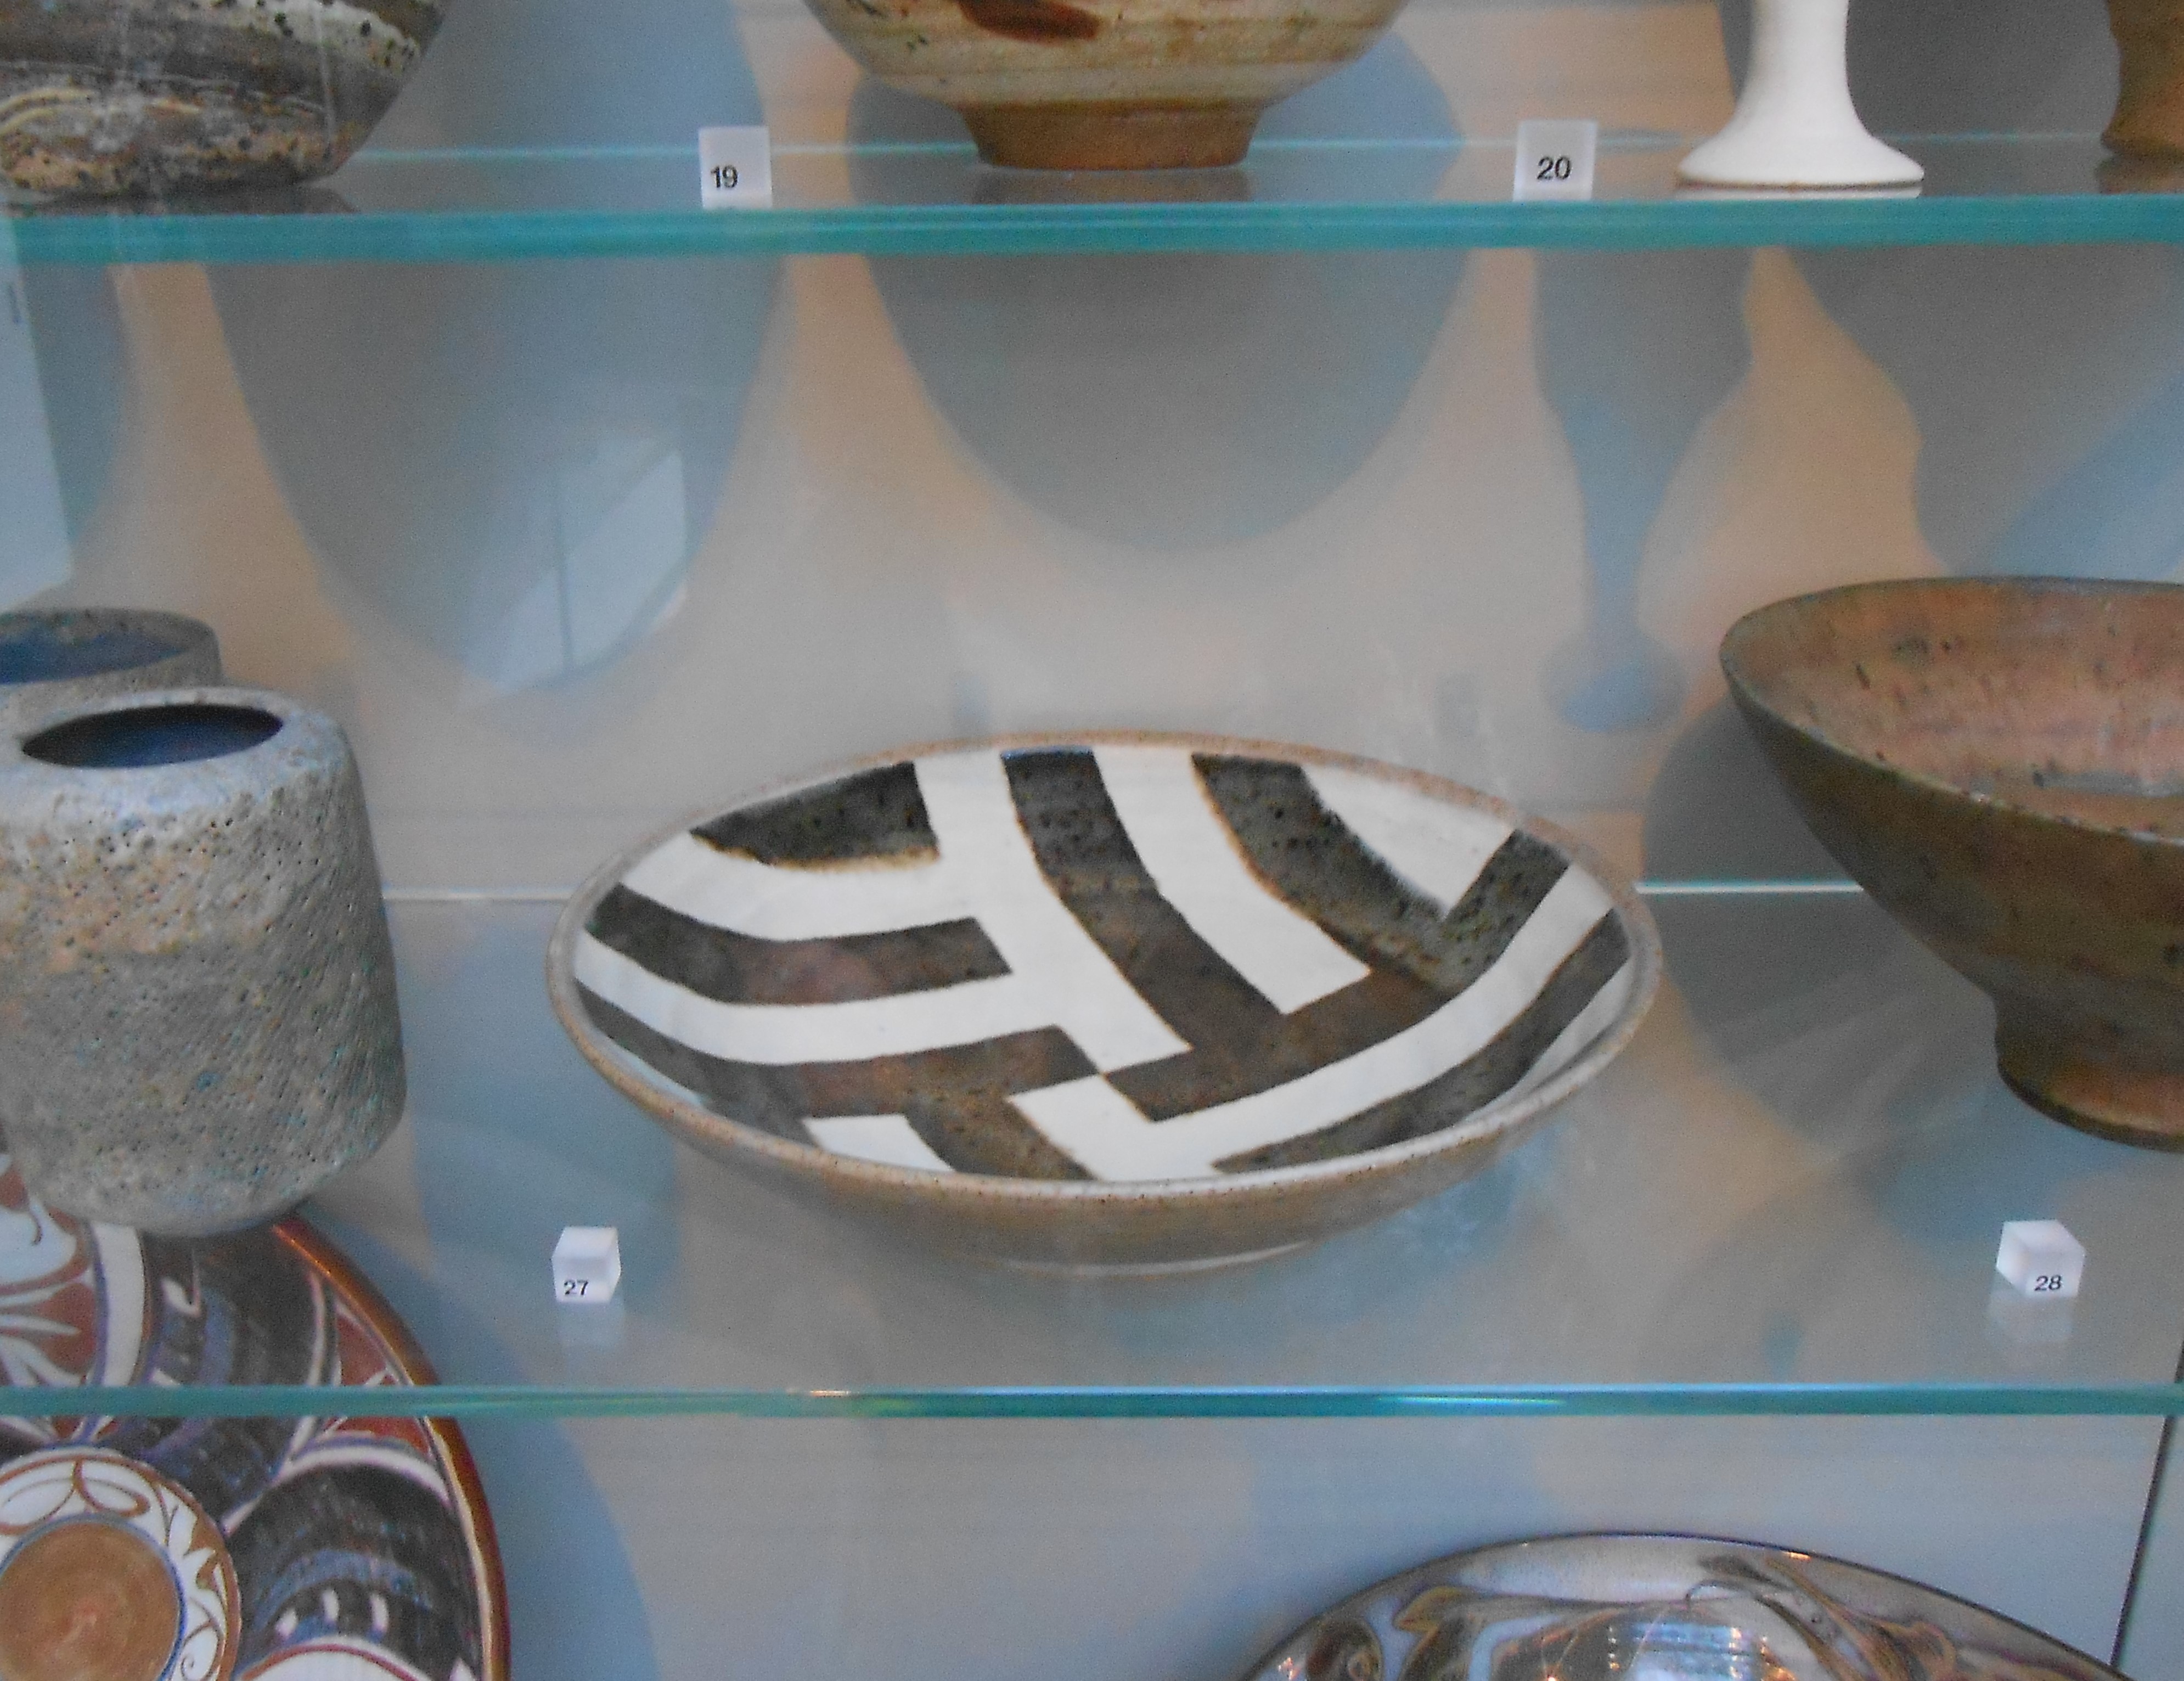 伊曼纽尔·库珀(1938-2012)，条纹盘，1970年，骨灰釉下黑白滑块的石器，CIRC.490-1970©维多利亚和阿尔伯特博物馆，伦敦。